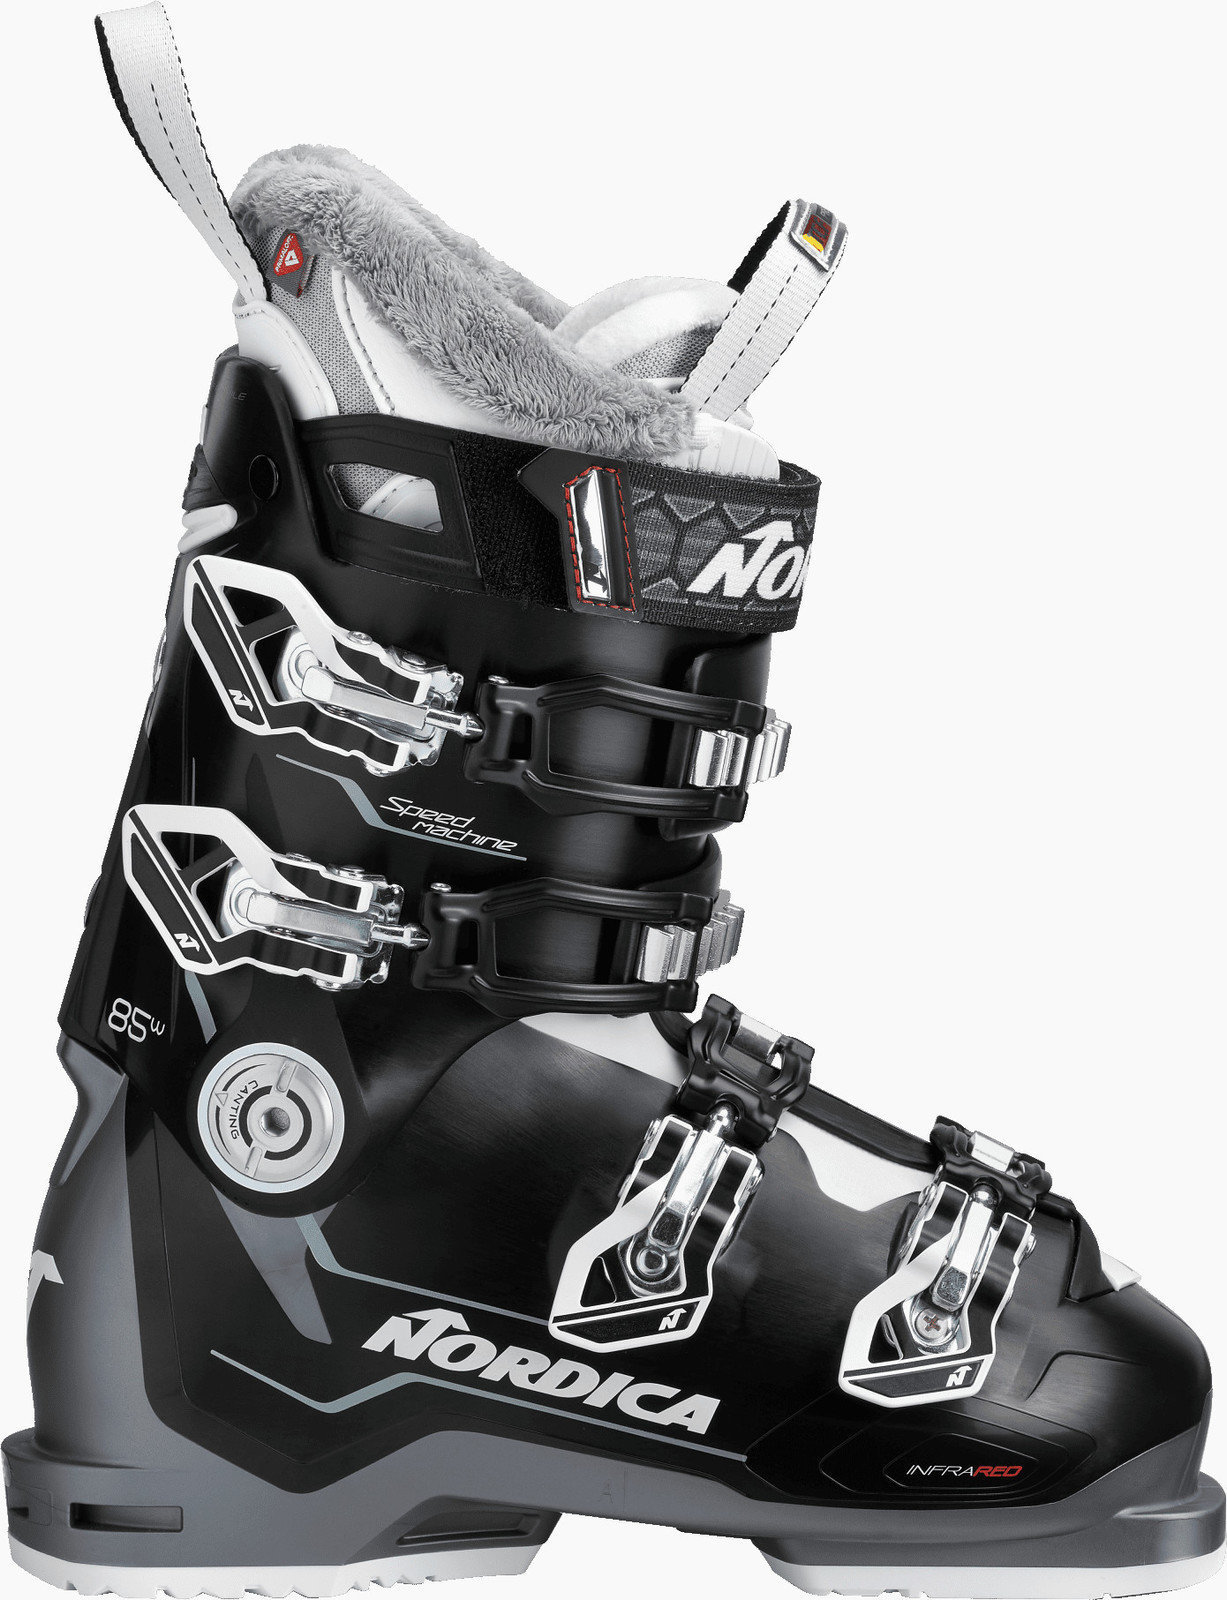 Cipele za alpsko skijanje Nordica Speedmachine W Black-Anthracite-White 245 Cipele za alpsko skijanje